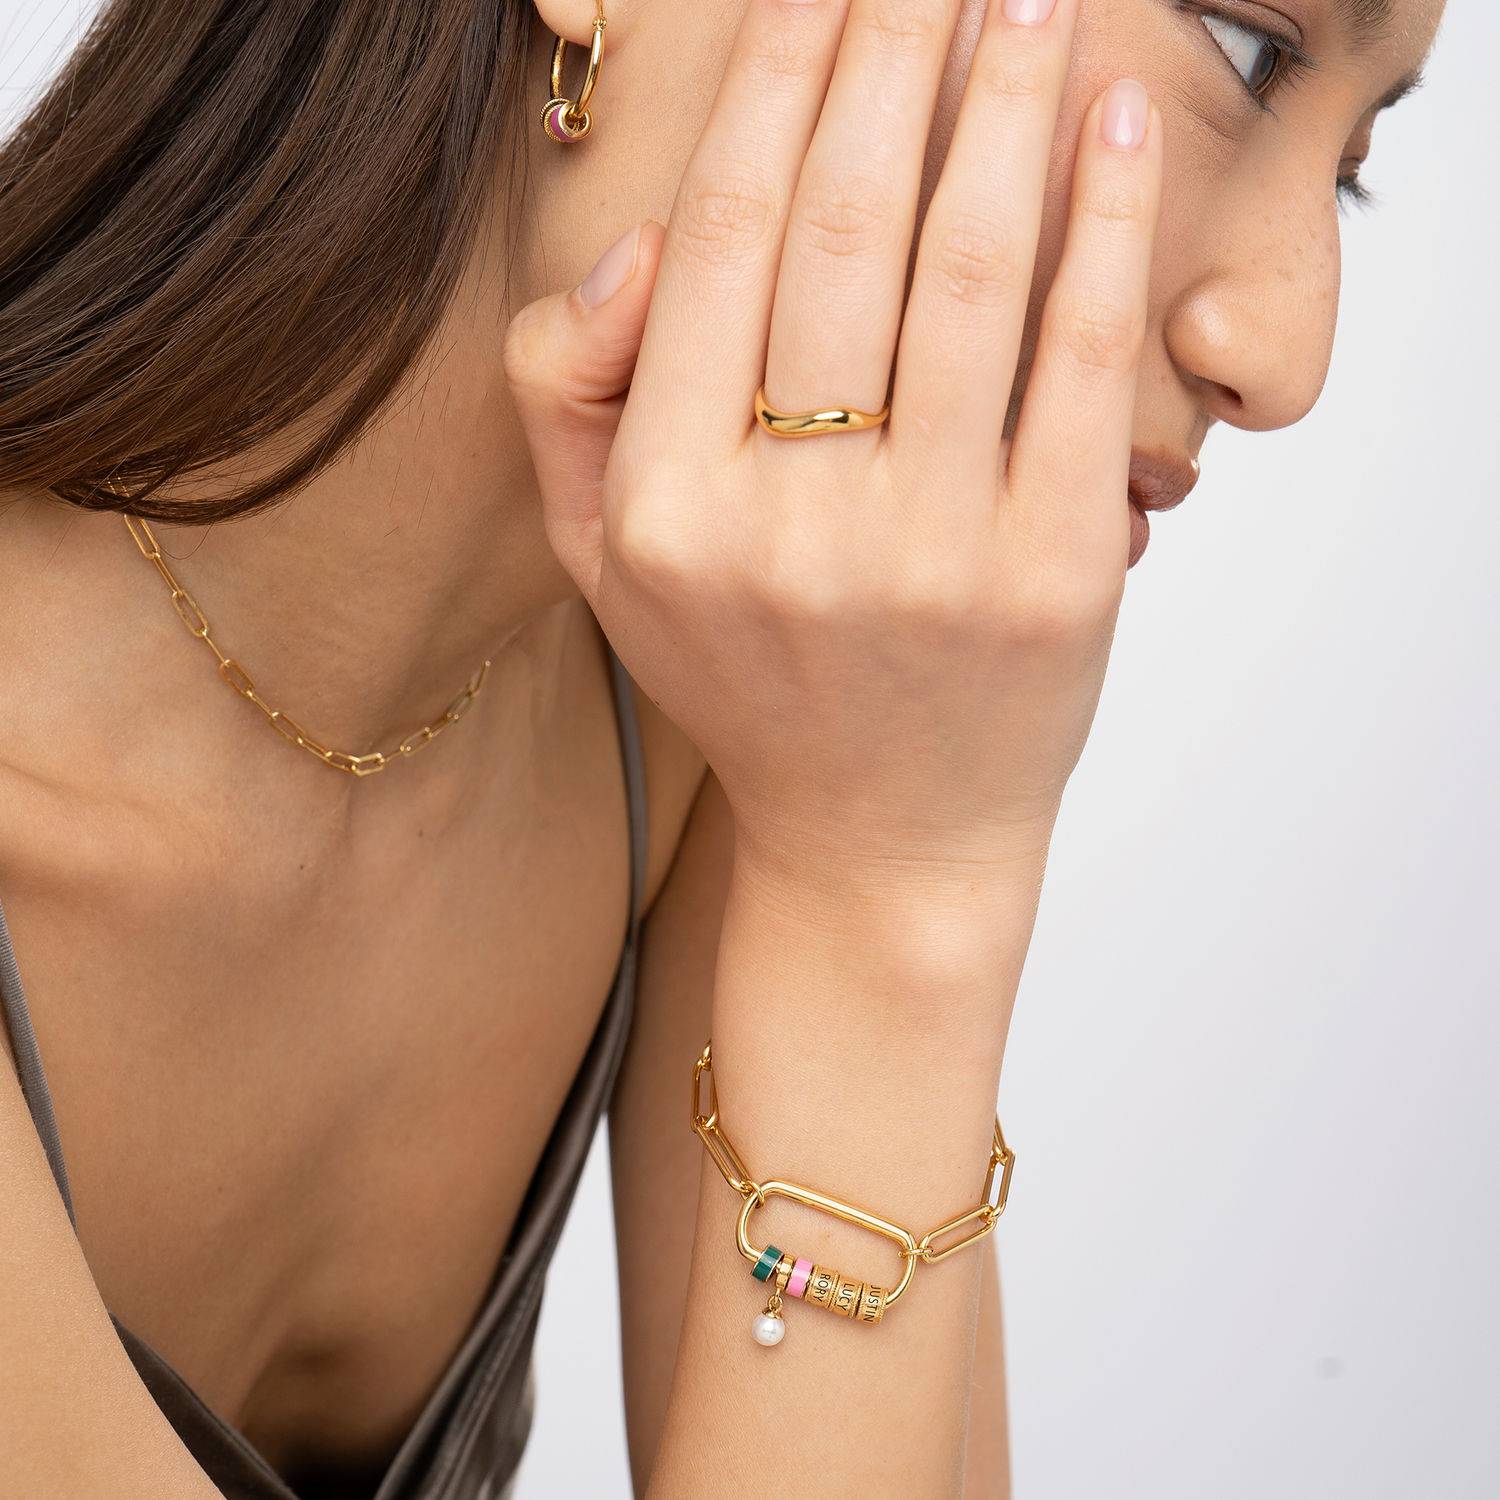 Linda armband met ovale sluiting en parel in 18k goud vermeil-4 Productfoto